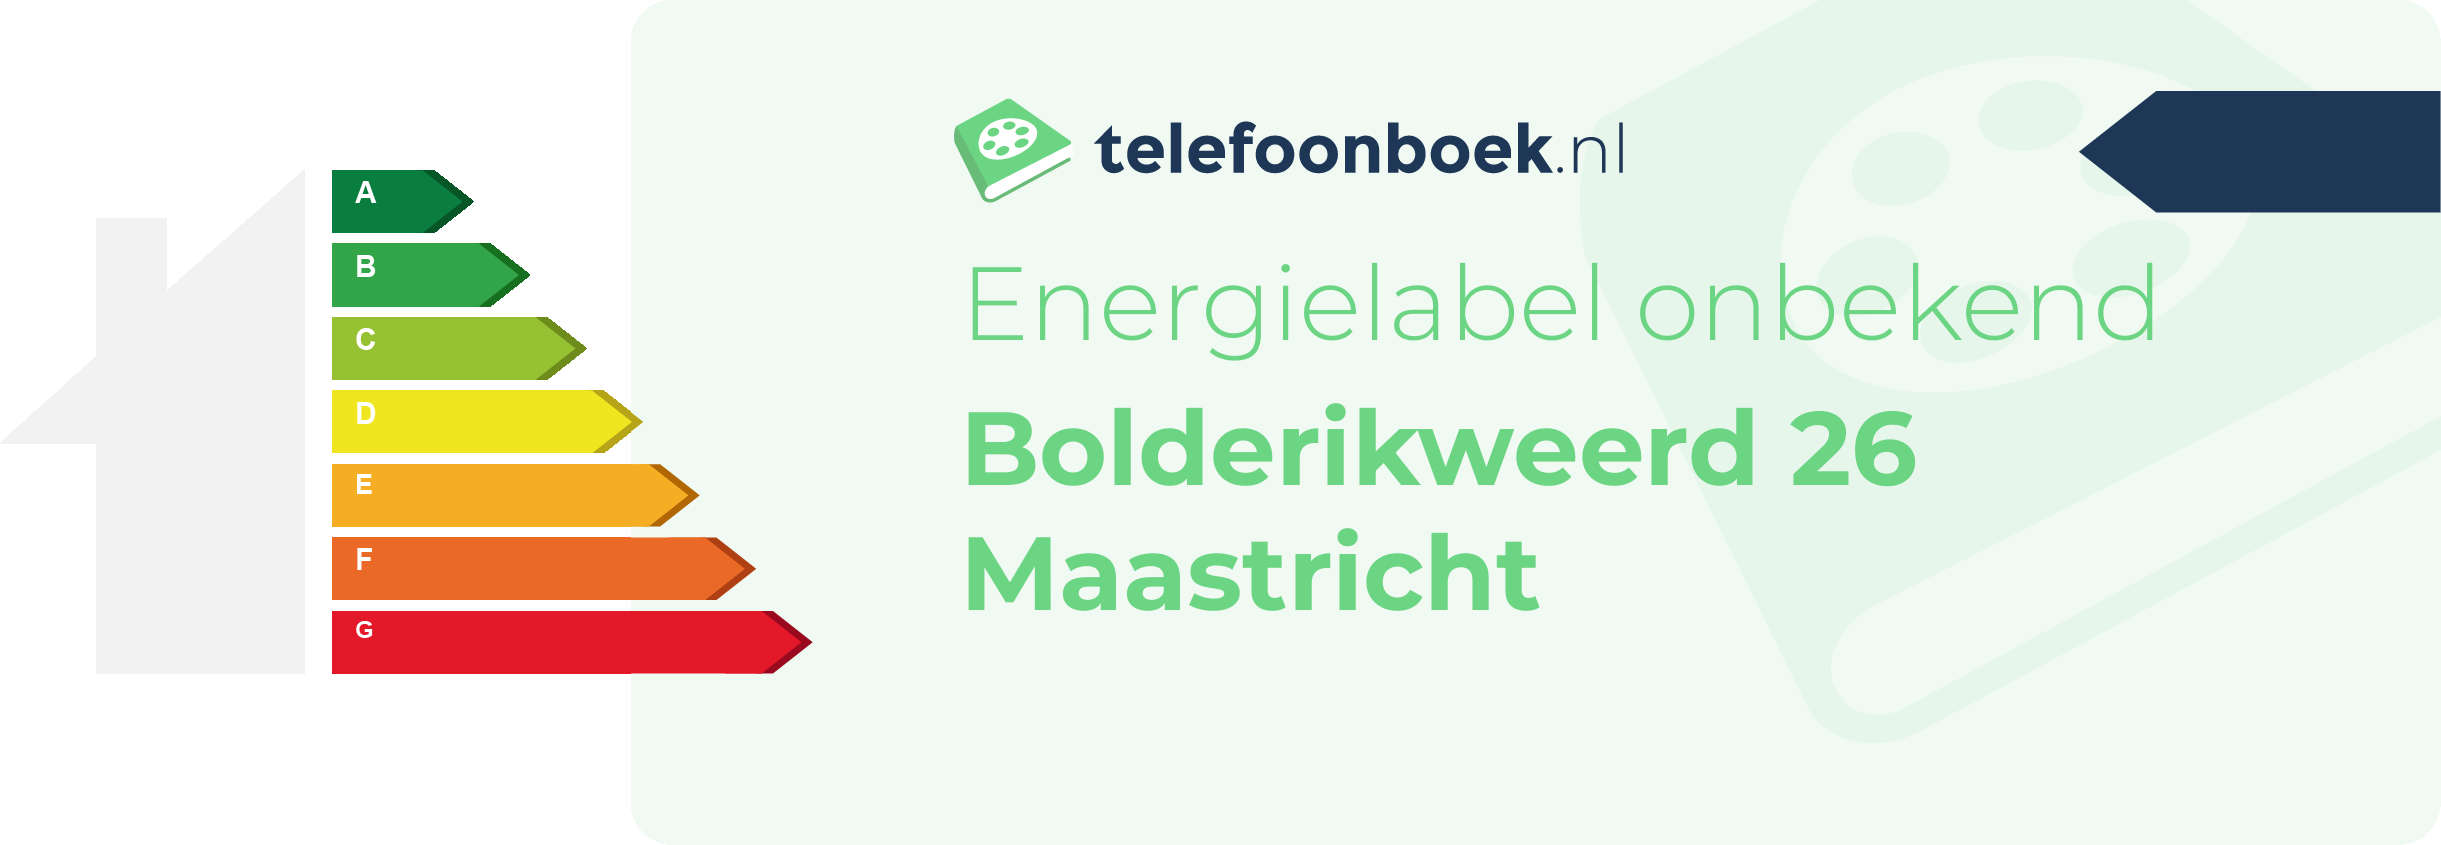 Energielabel Bolderikweerd 26 Maastricht